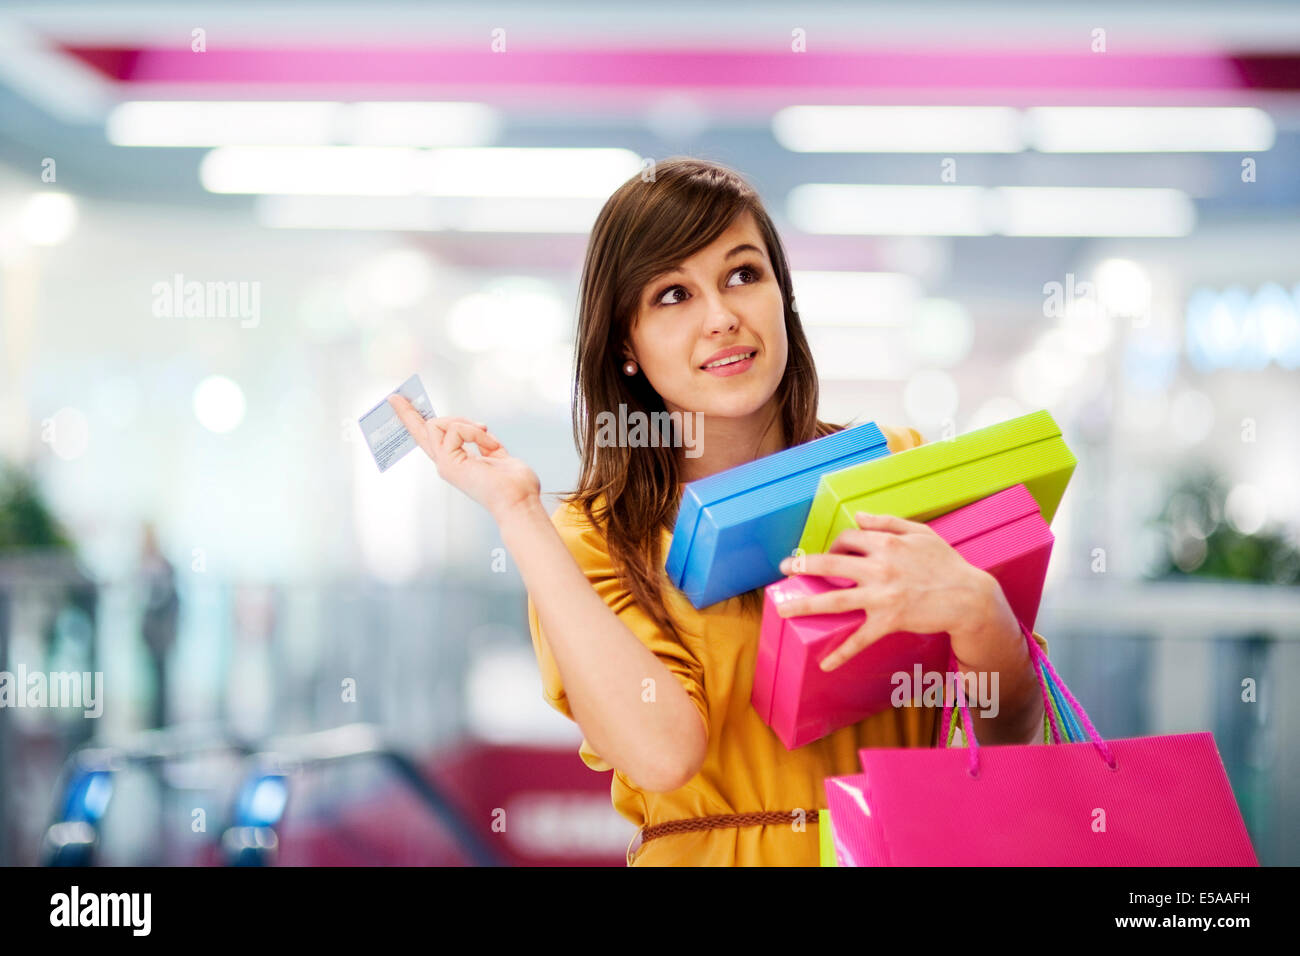 Think sale. Люди с покупками. Девушка с покупками. Девушка с кредиткой. Женщина с кредитной картой.